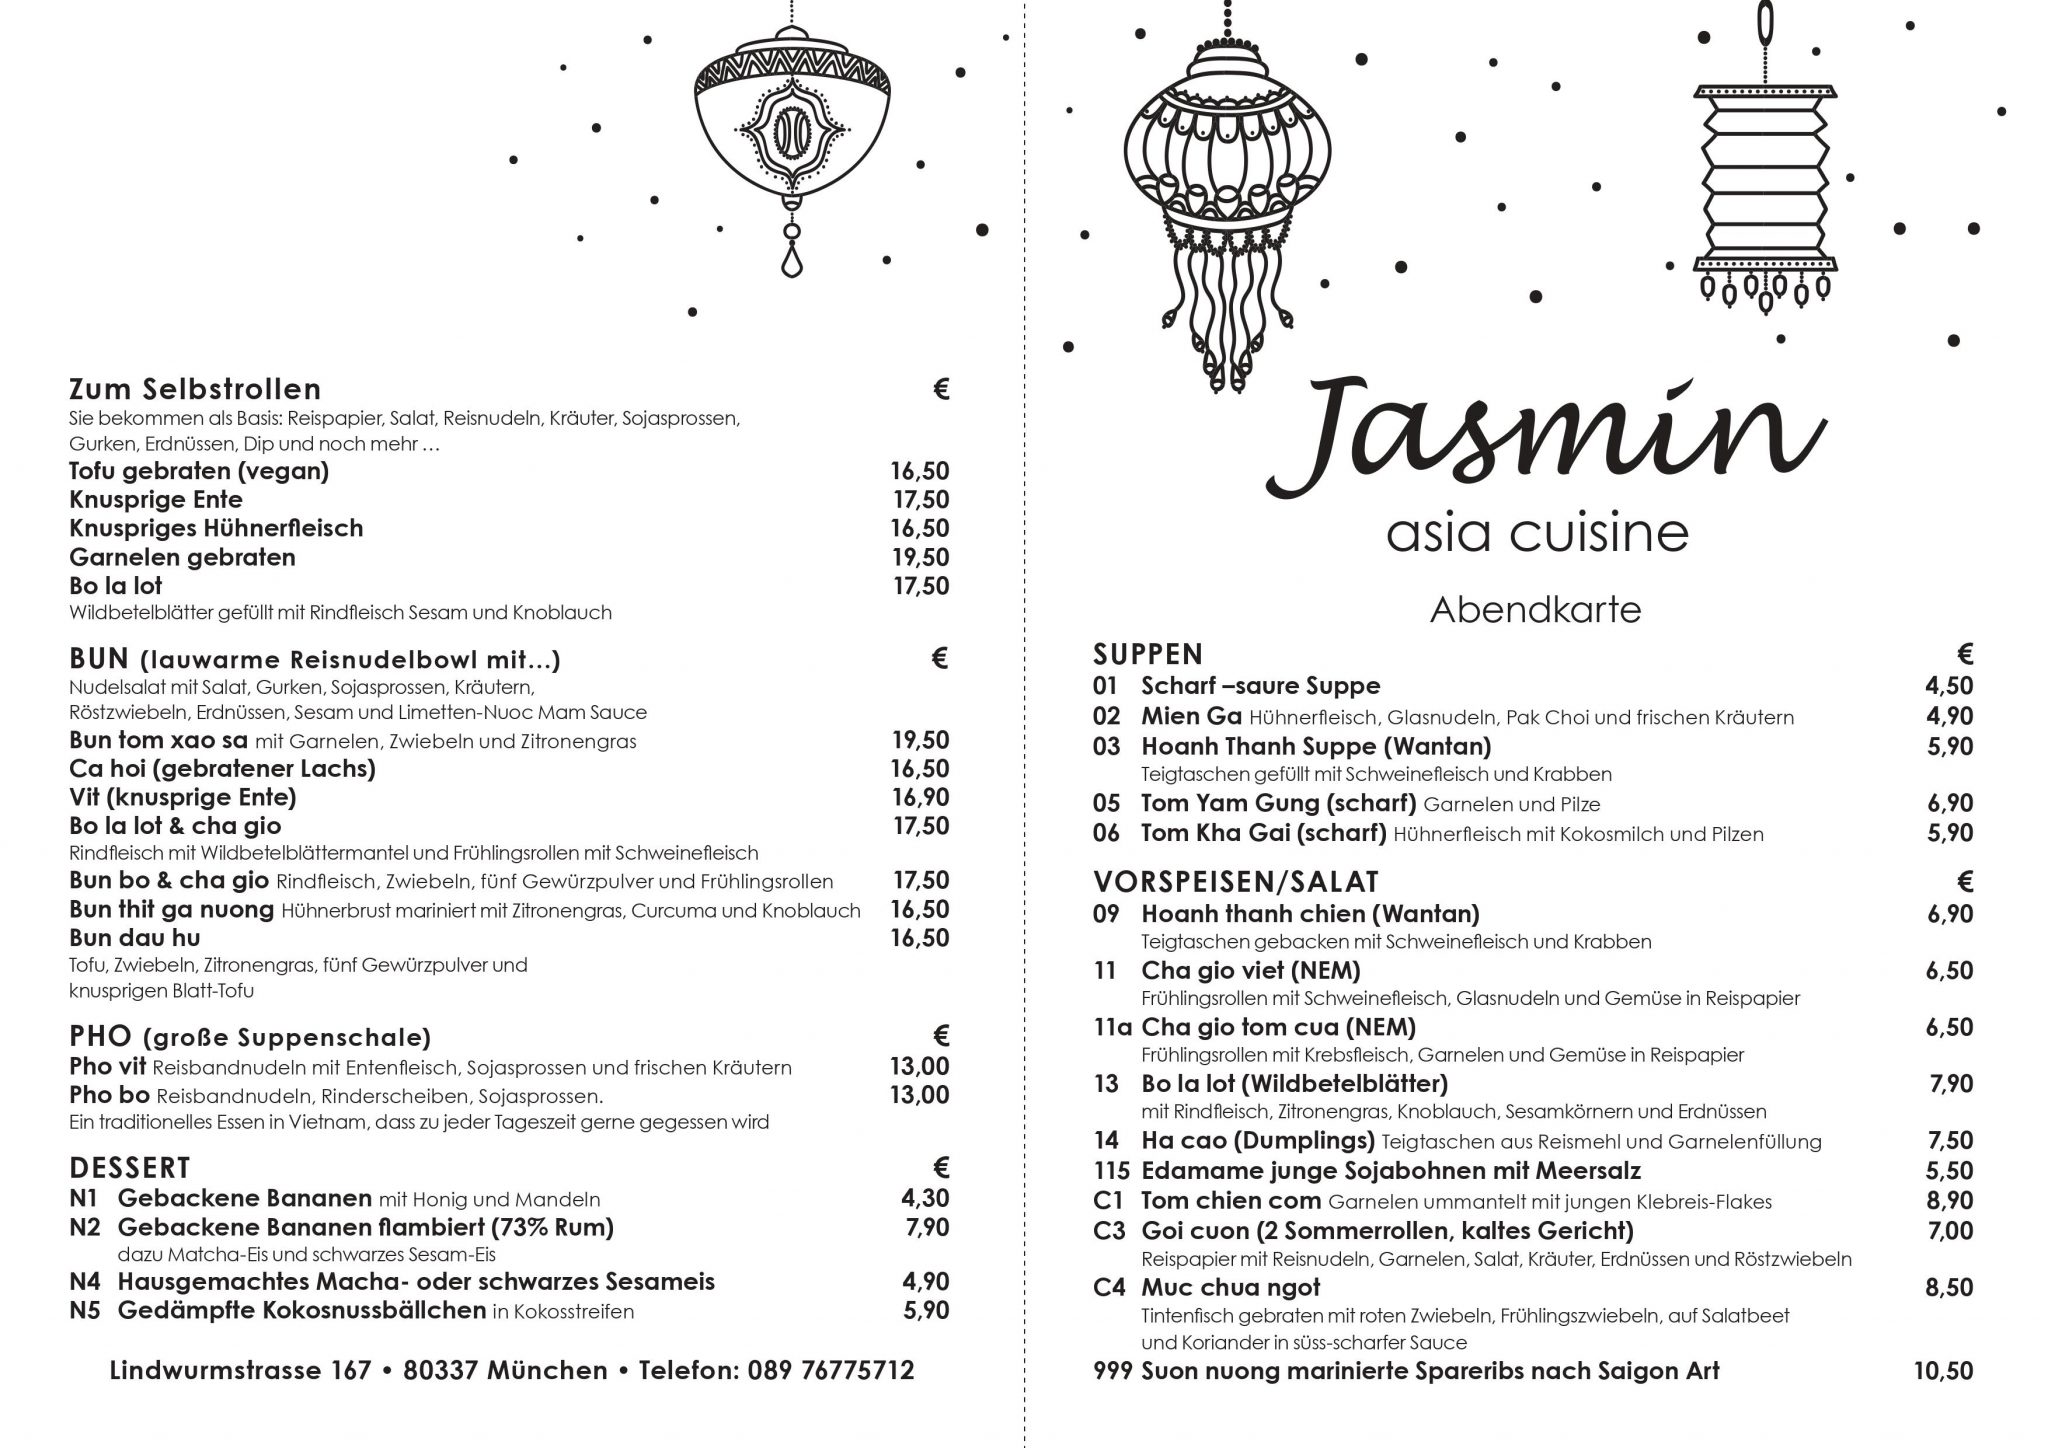 Abendkarte Jasmin Asia Cuisine 1